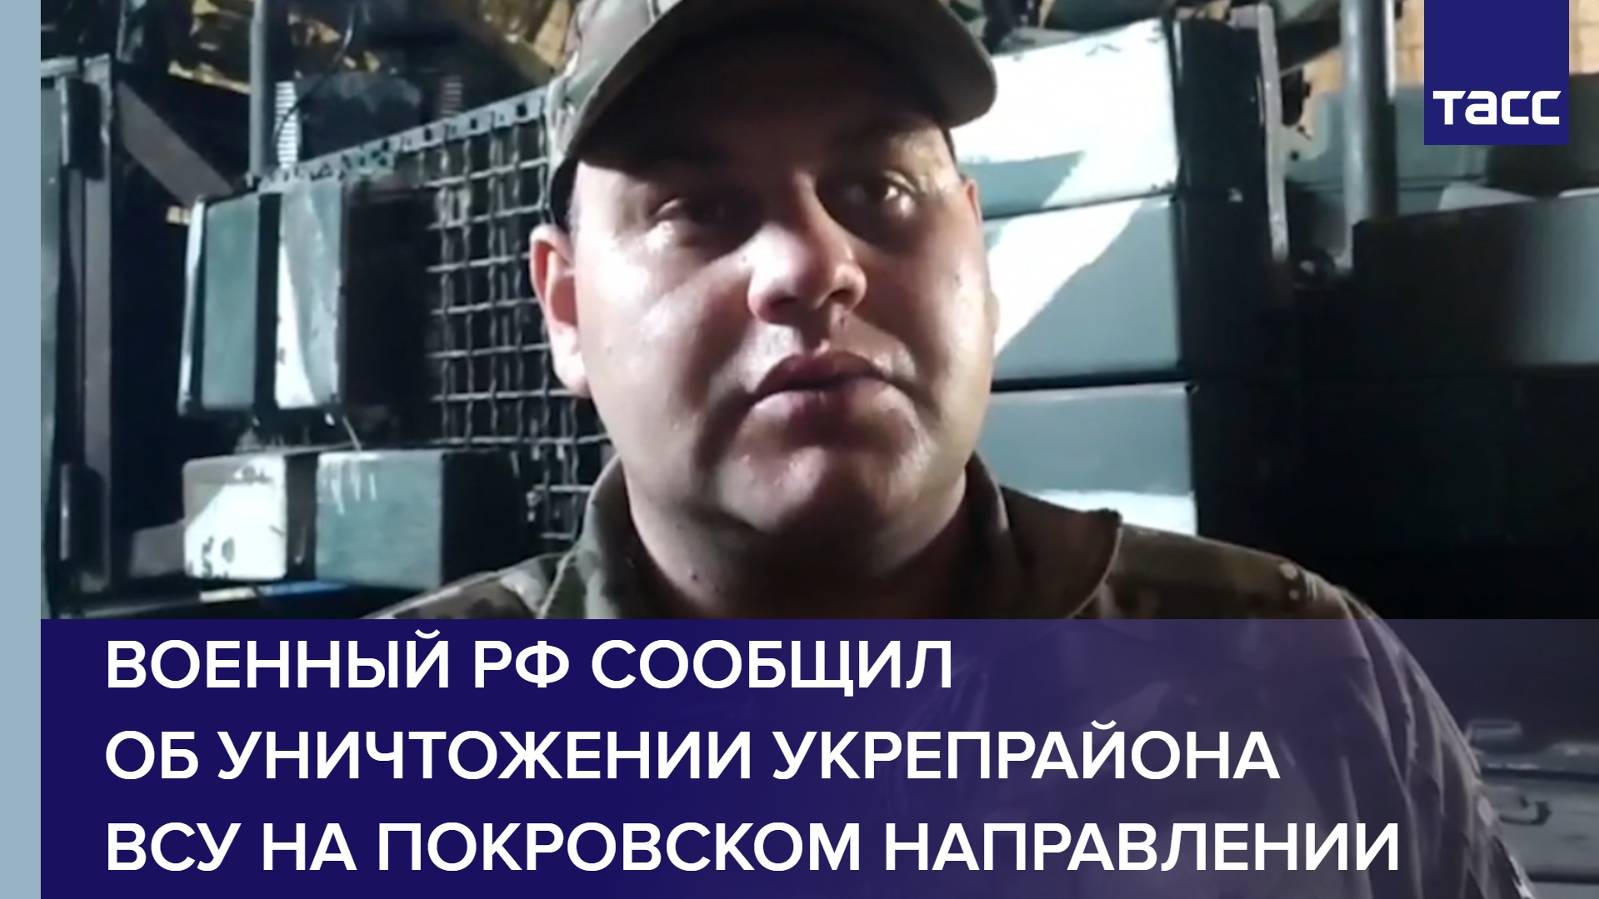 Военный РФ сообщил об уничтожении укрепрайона ВСУ на покровском направлении